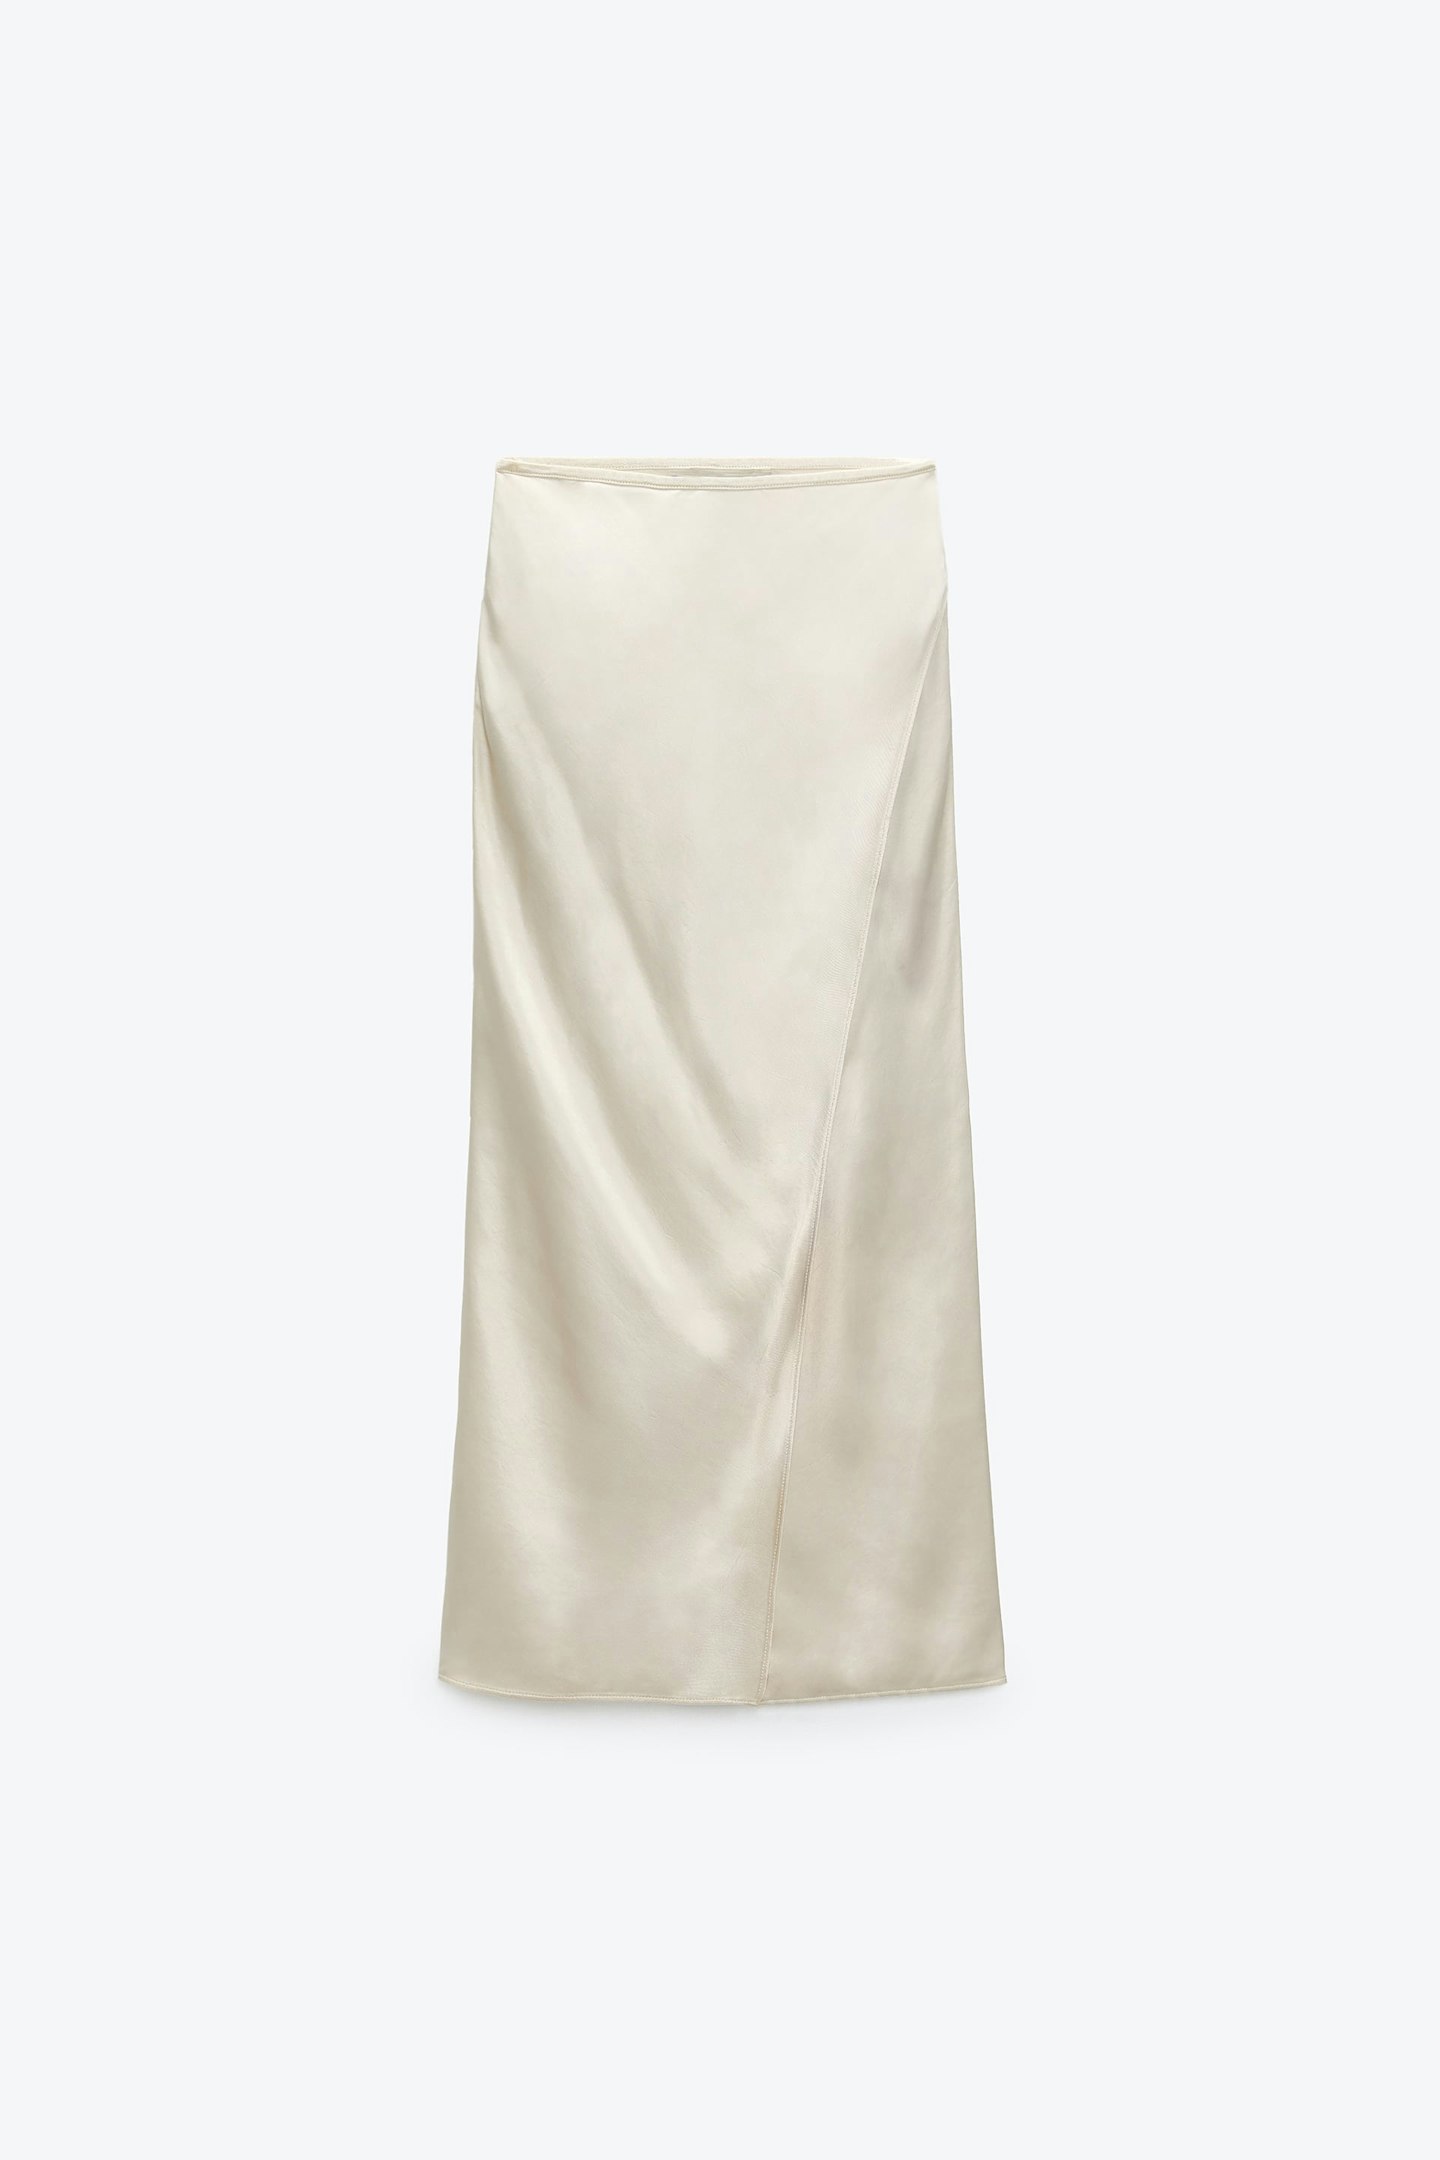 Zara, Satin-Finish Midi Skirt, £25.99